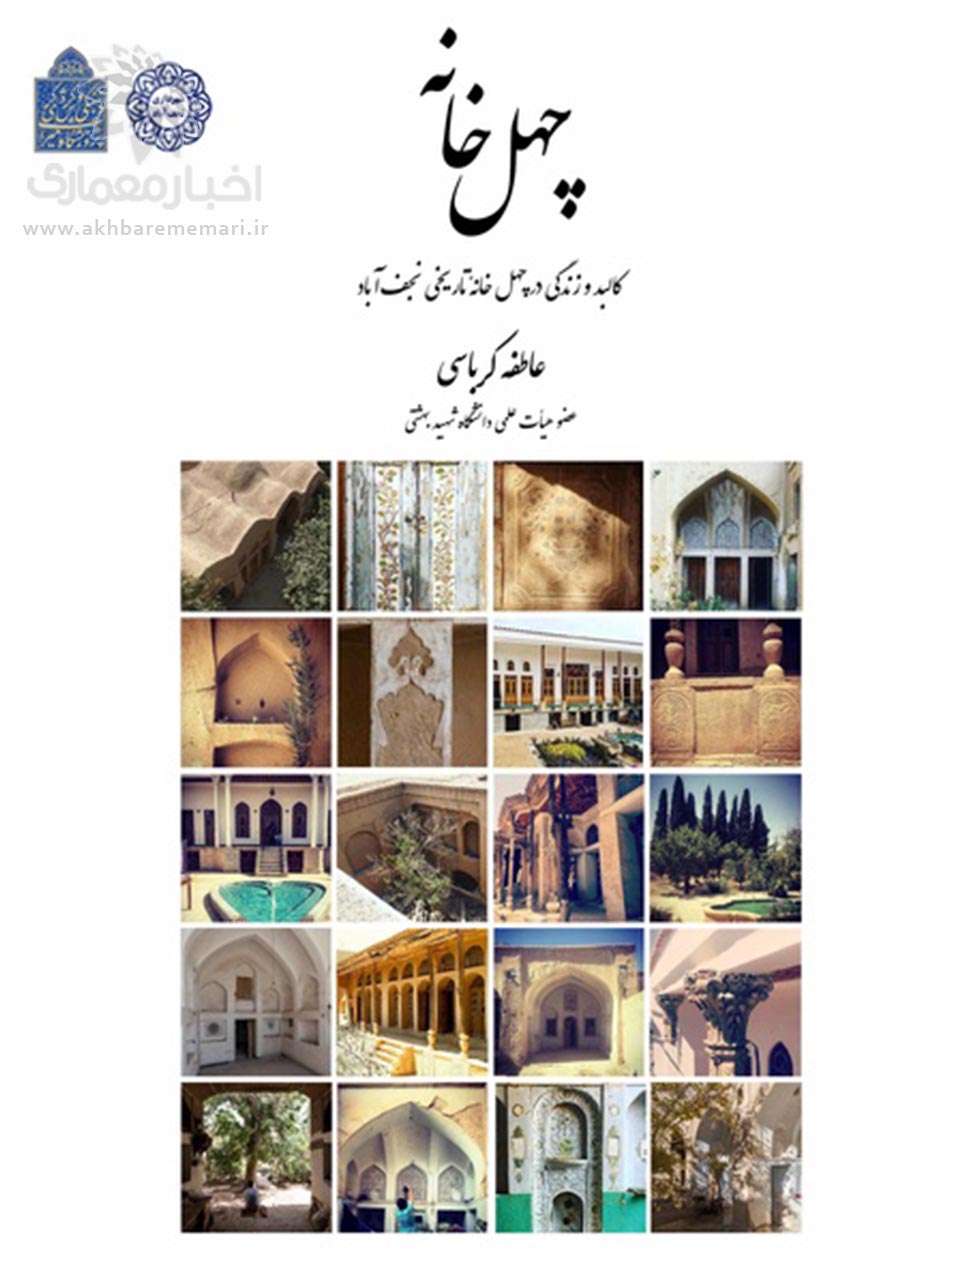 کتاب «چهل خانه؛ کالبد و زندگی در چهل خانه تاریخی نجف آباد» منتشر شد